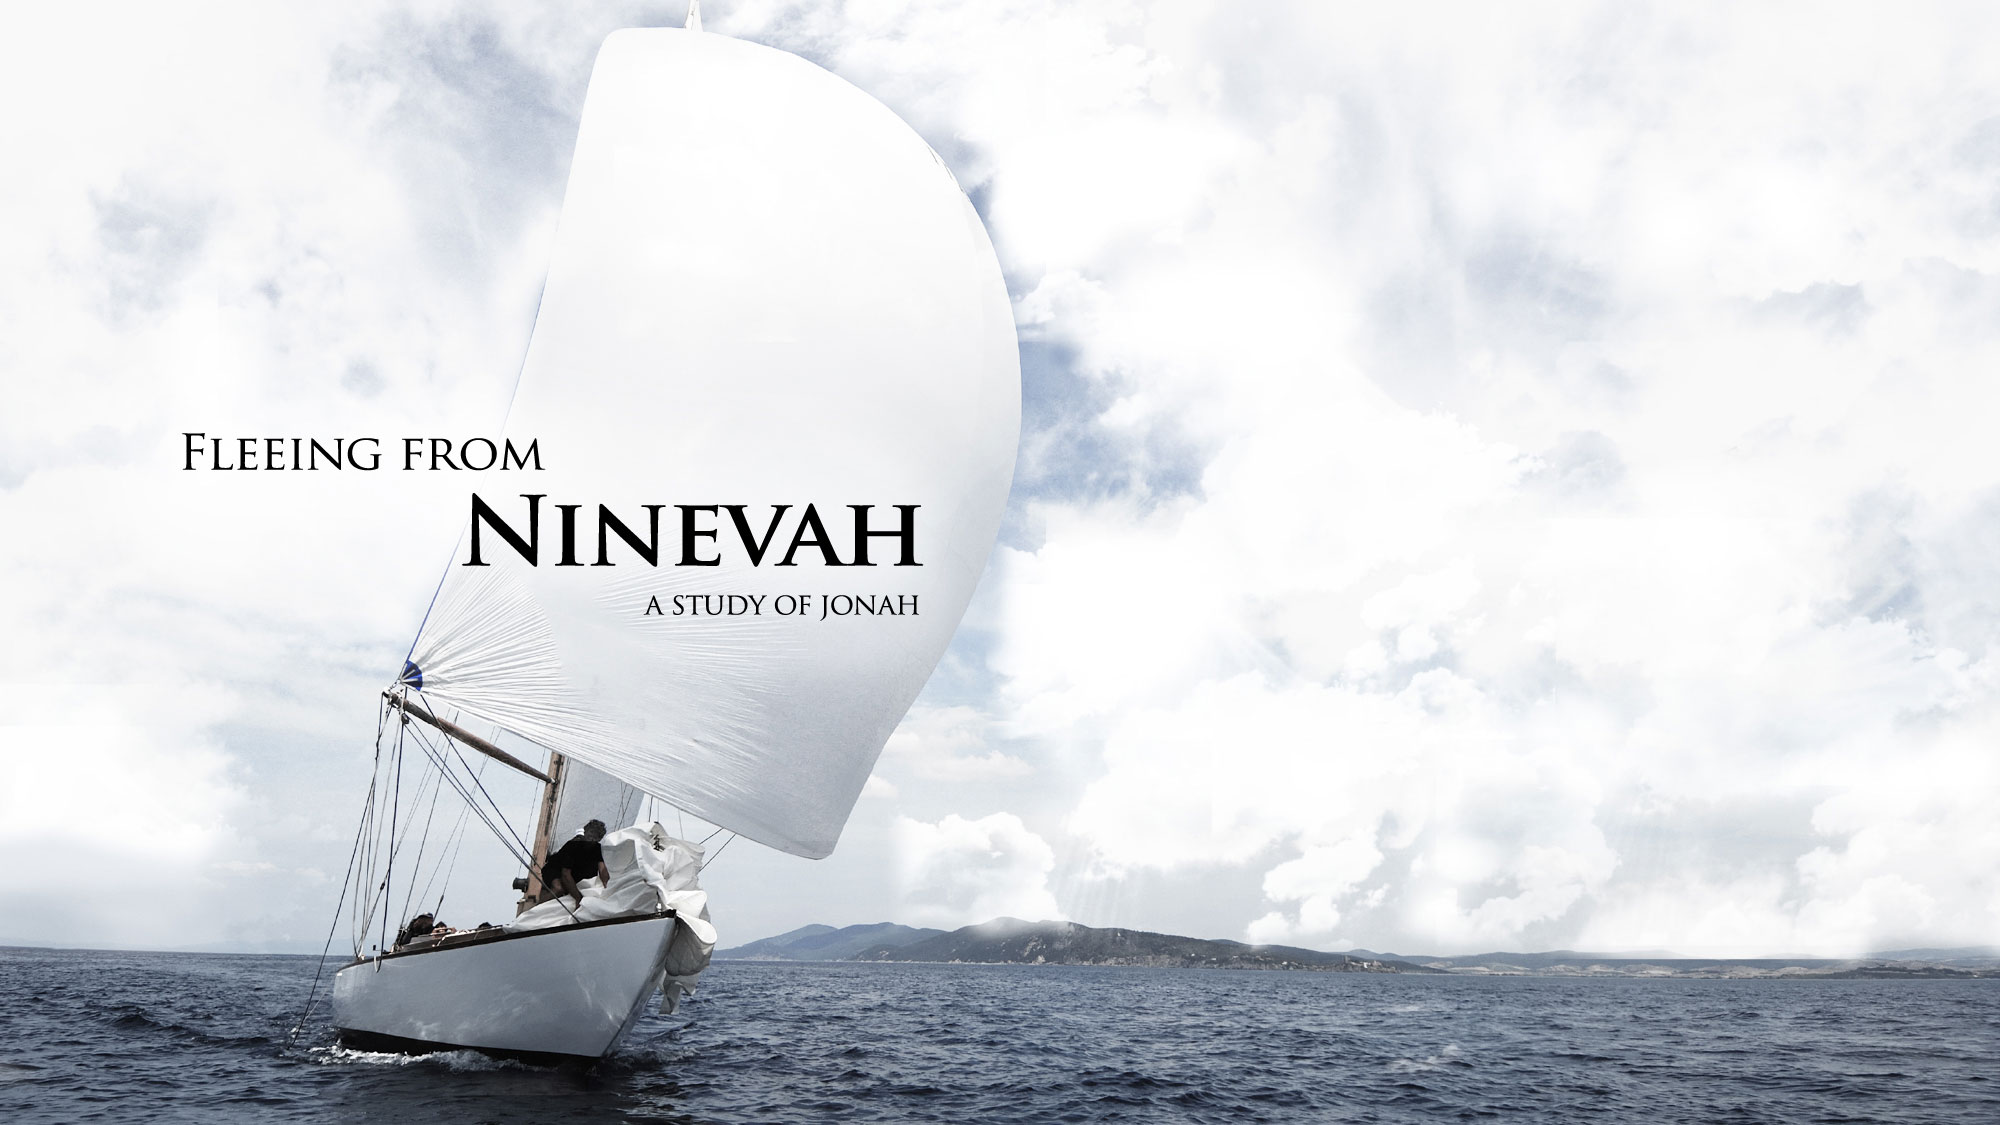 Fleeing from Ninevah